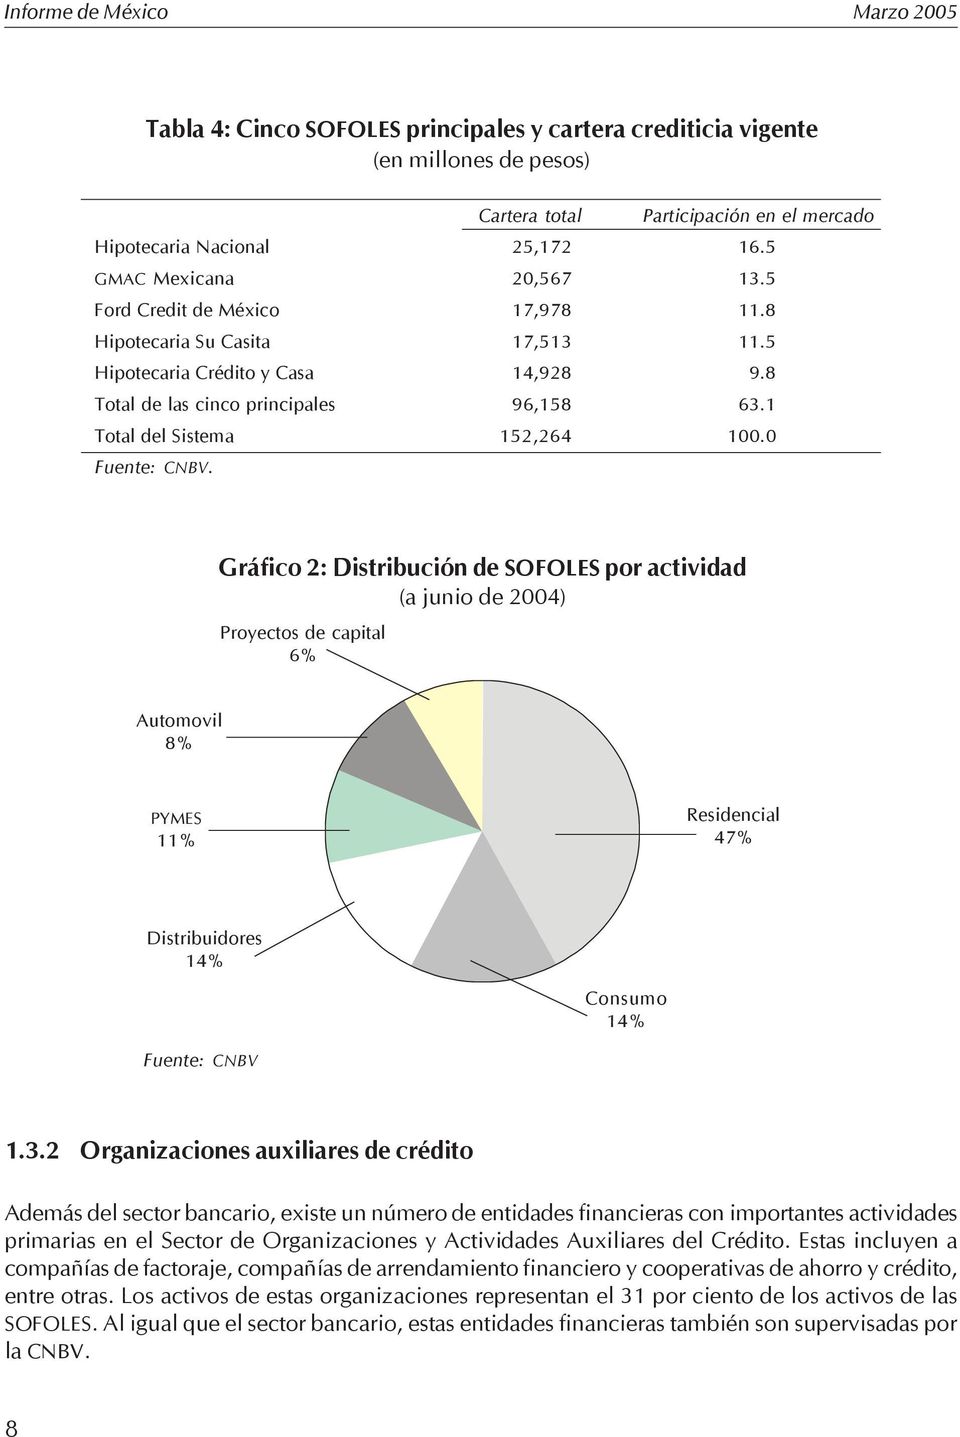 Gráfico 2: Distribución de SOFOLES por actividad (a junio de 2004) Proyectos de capital 6% Automovil 8% PYMES 11% Residencial 47% Distribuidores 14% Consumo 14% Fuente: CNBV 1.3.